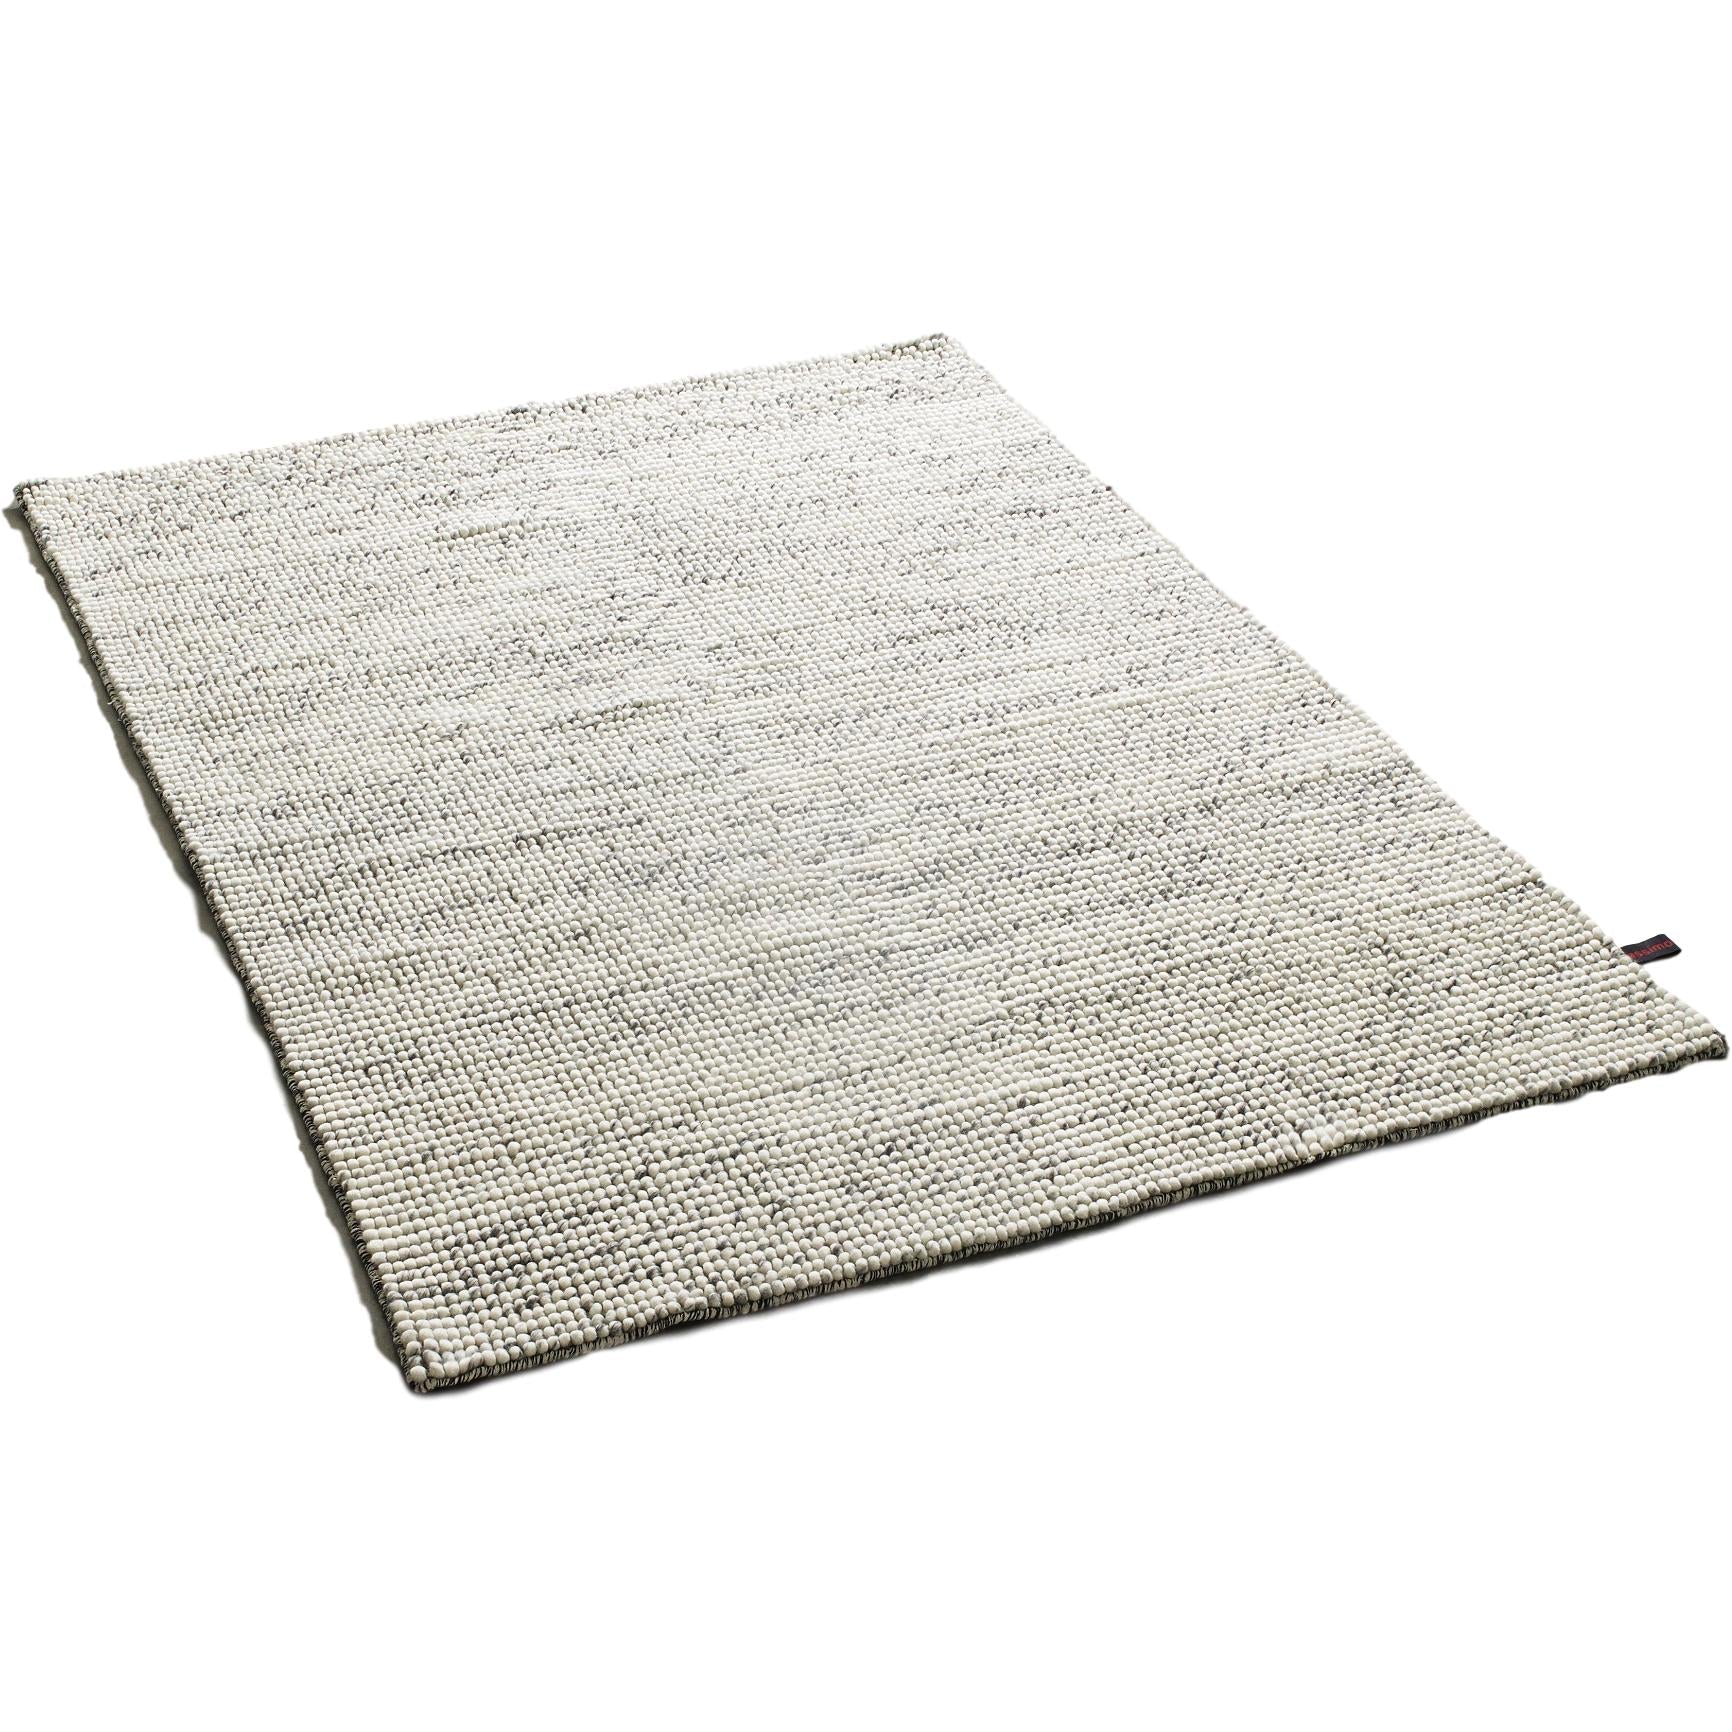 Massimo Bubbles tæppe blandet grå, 200x300 cm